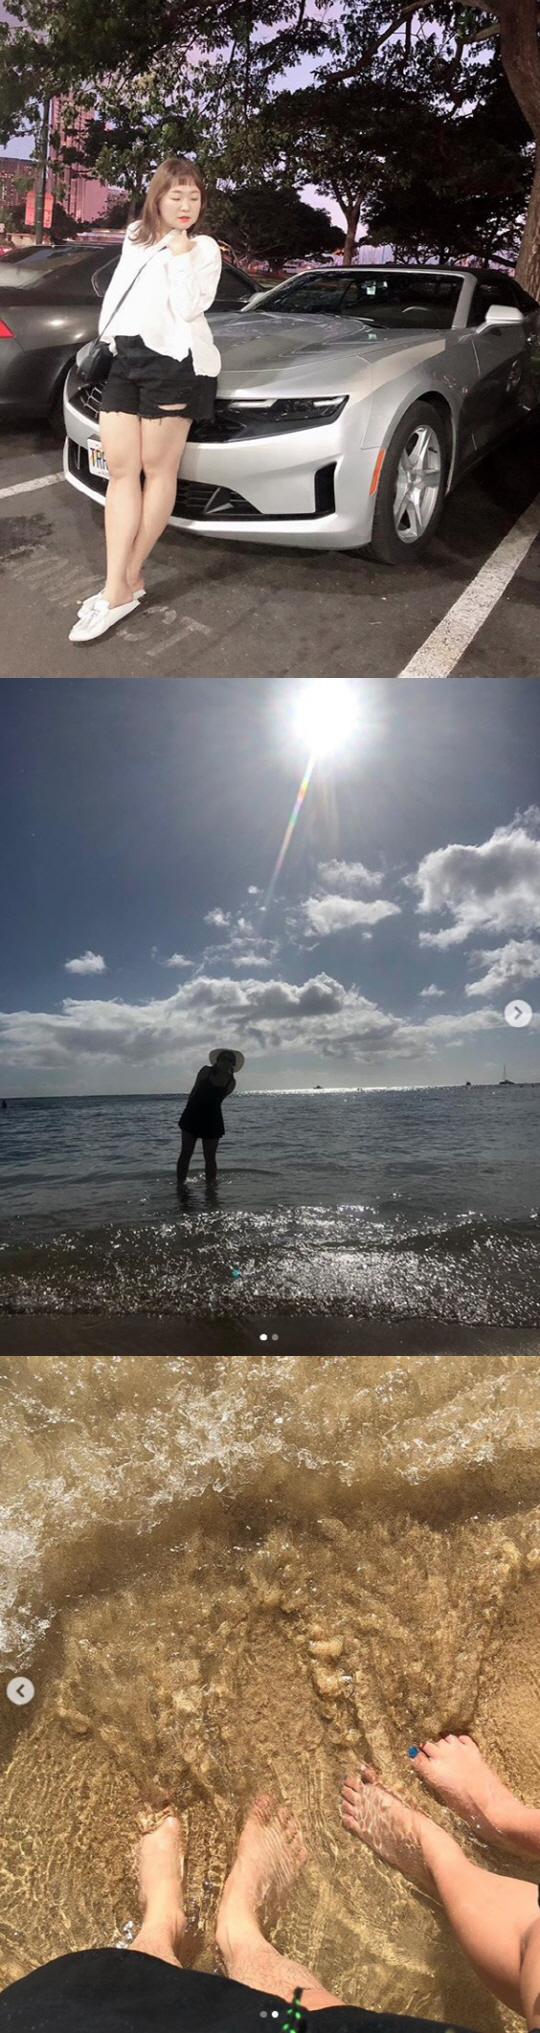 이수지, 하와이 신혼여행 인증샷…수영복 몸매 공개